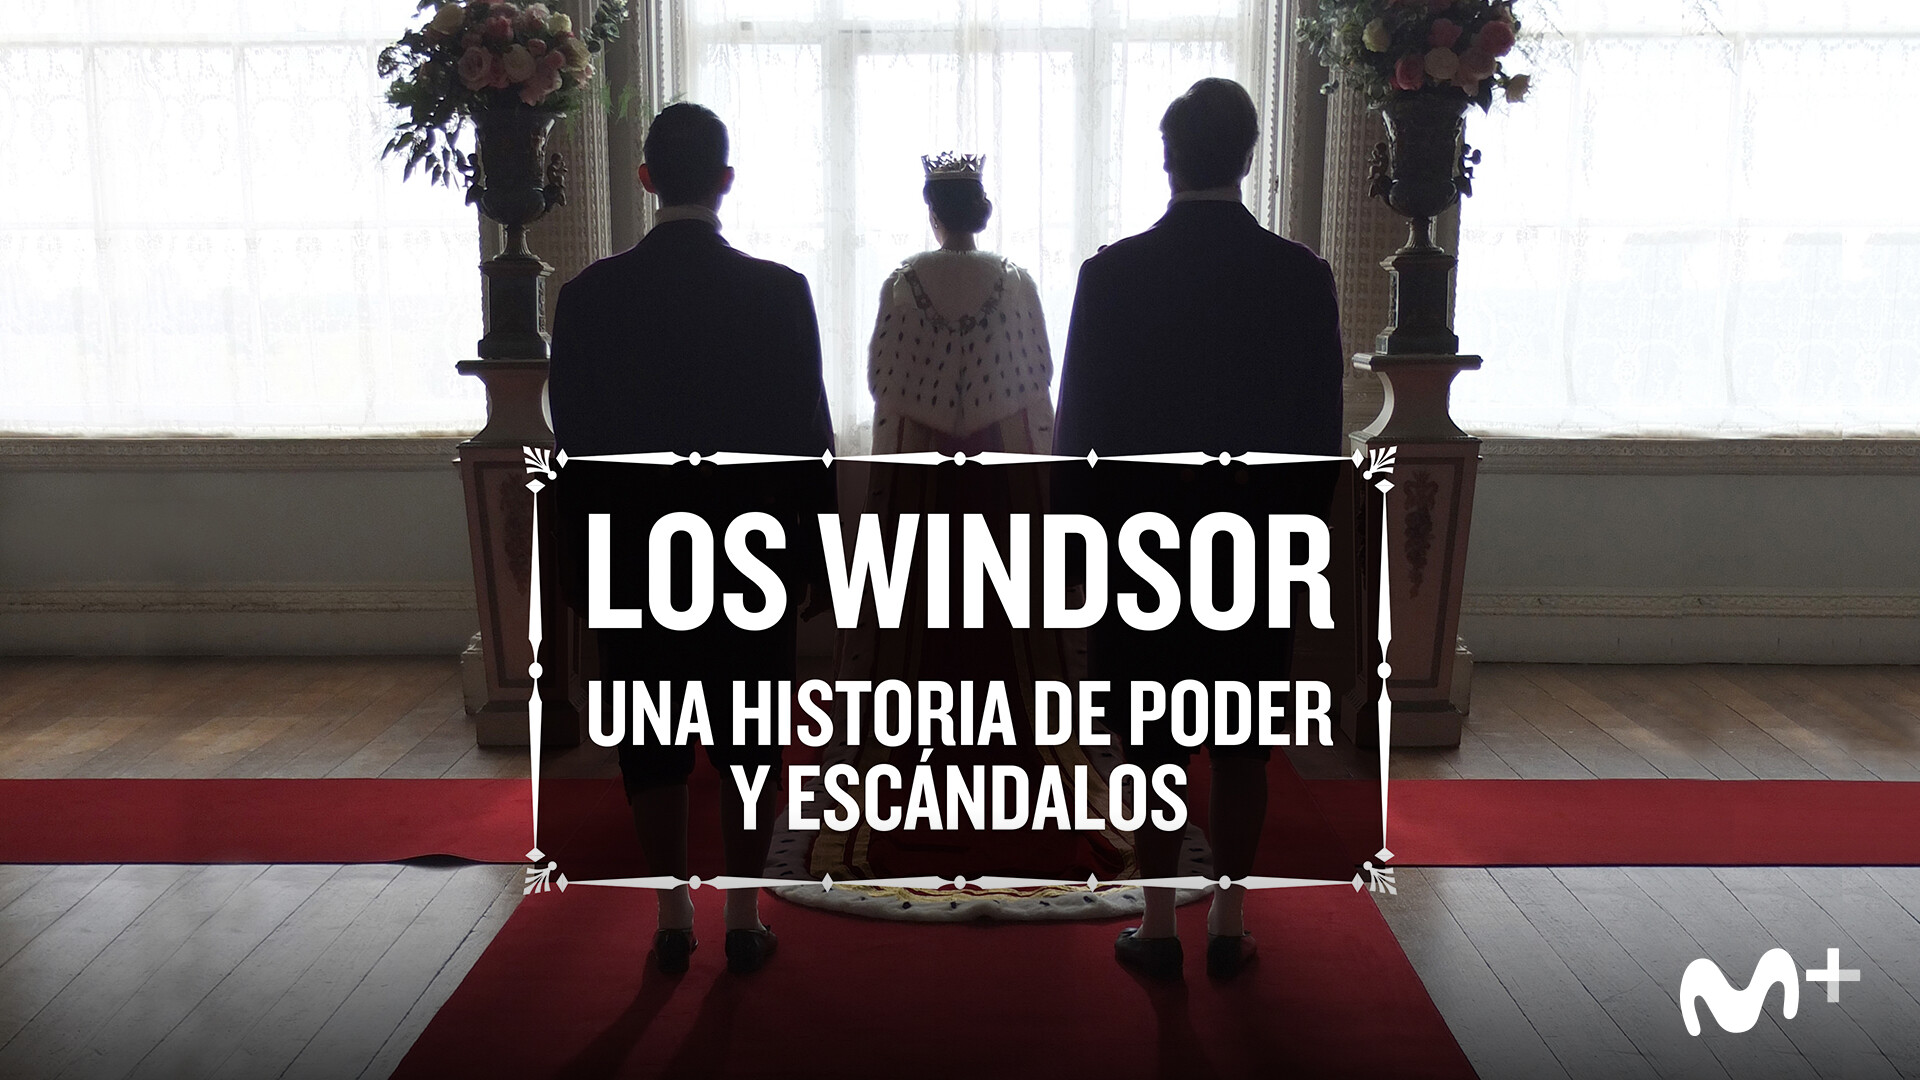 'Los Windsor: una historia de poder y escándalos', se estrena el 7 de julio en #0 de Movistar +